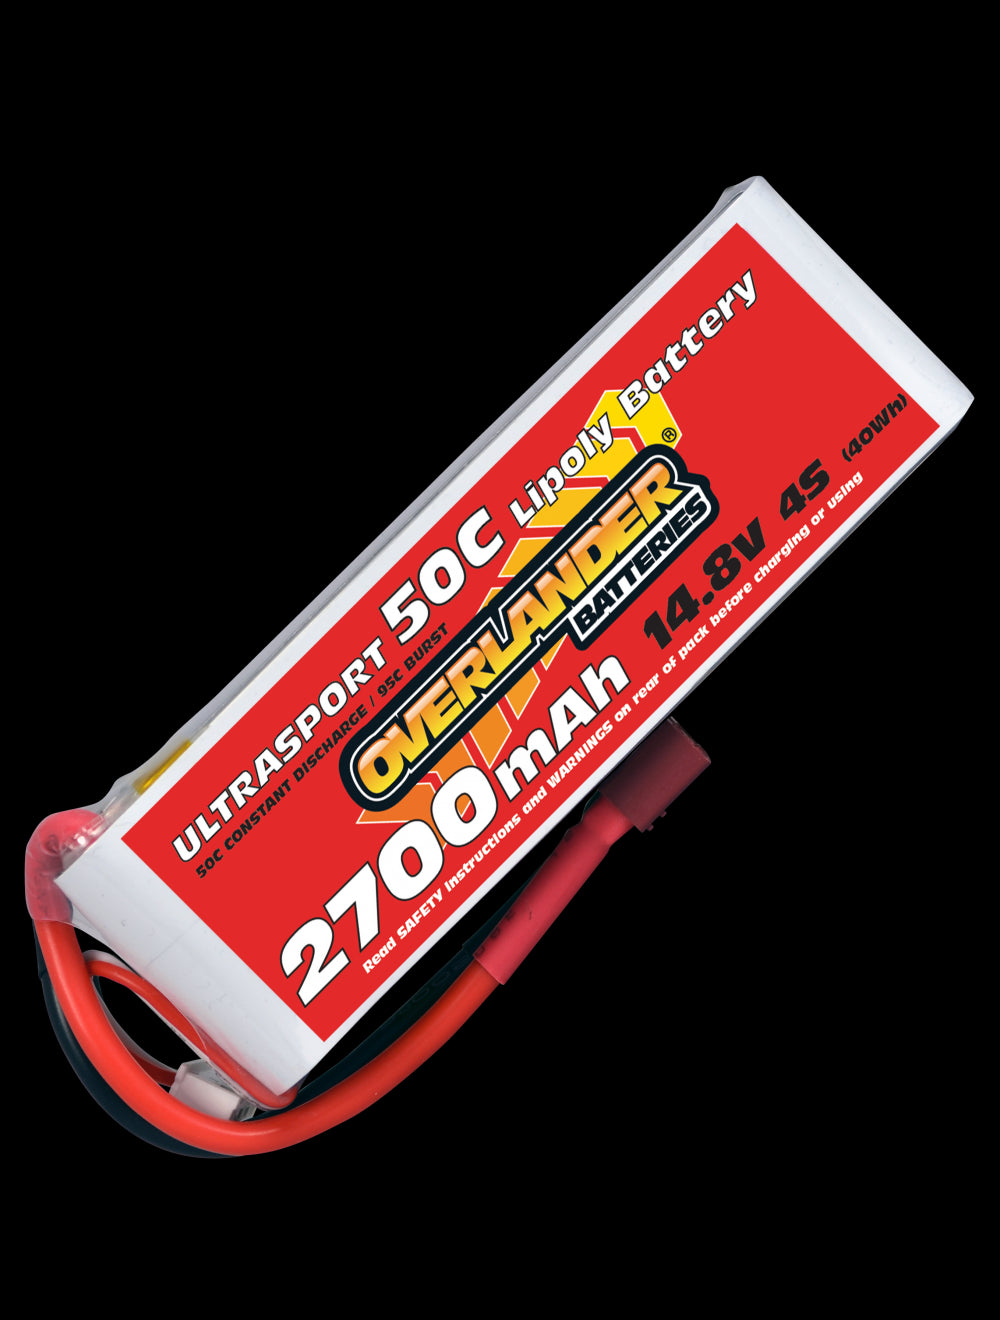 Overlander 2700mAh 14.8V 4S 50C Ultrasport LiPo Battery - XT60 Connector 3151